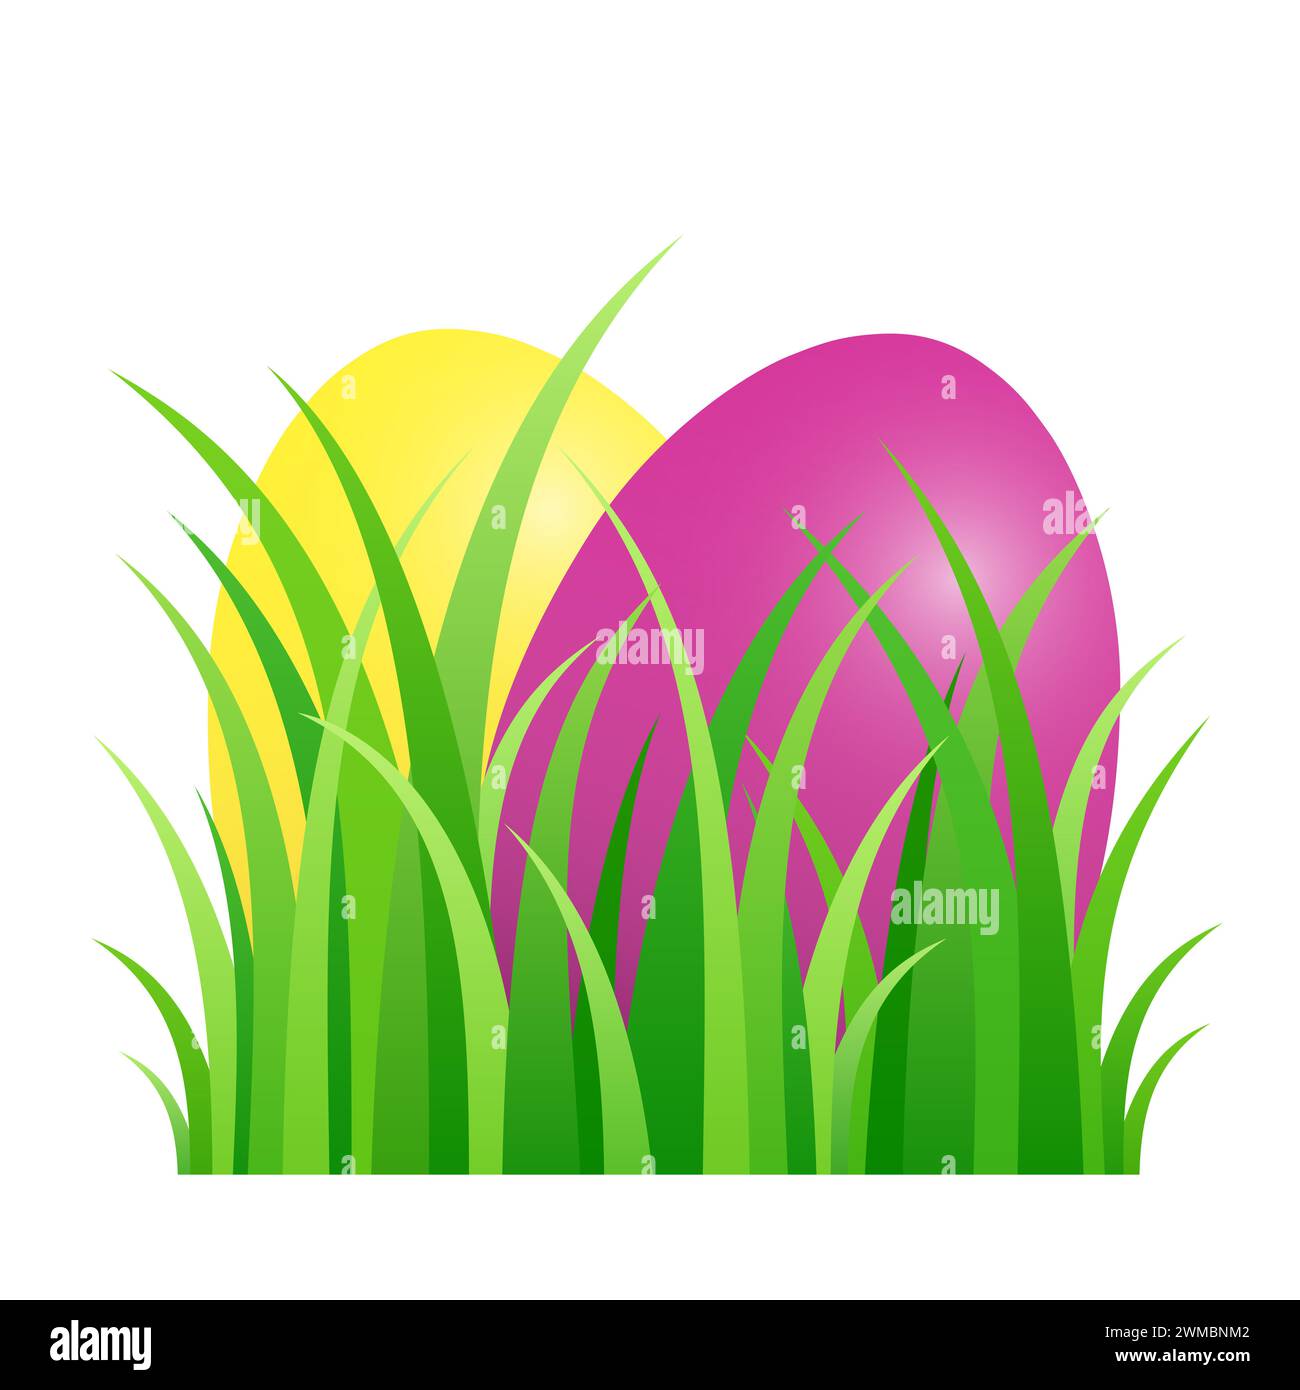 Ostereier versteckt im grünen Gras. Farbige Ostereier, auf einem Stück Rasen angeordnet. Ein Symbol für eine Eierjagd. Stockfoto